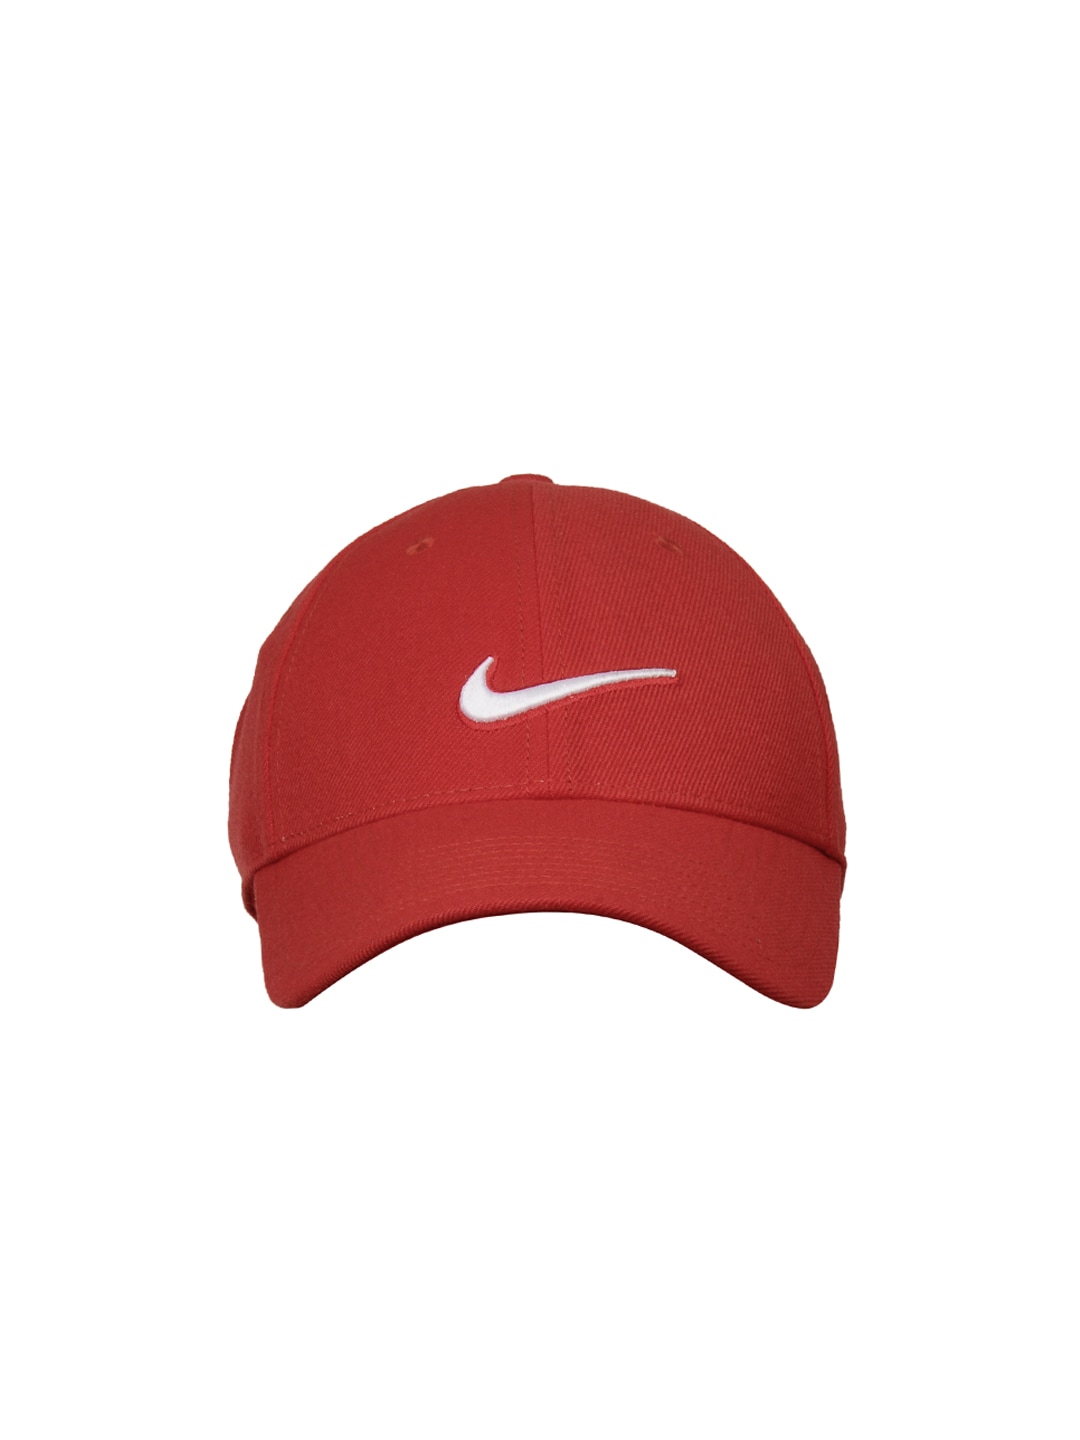 Nike Men Red Cap